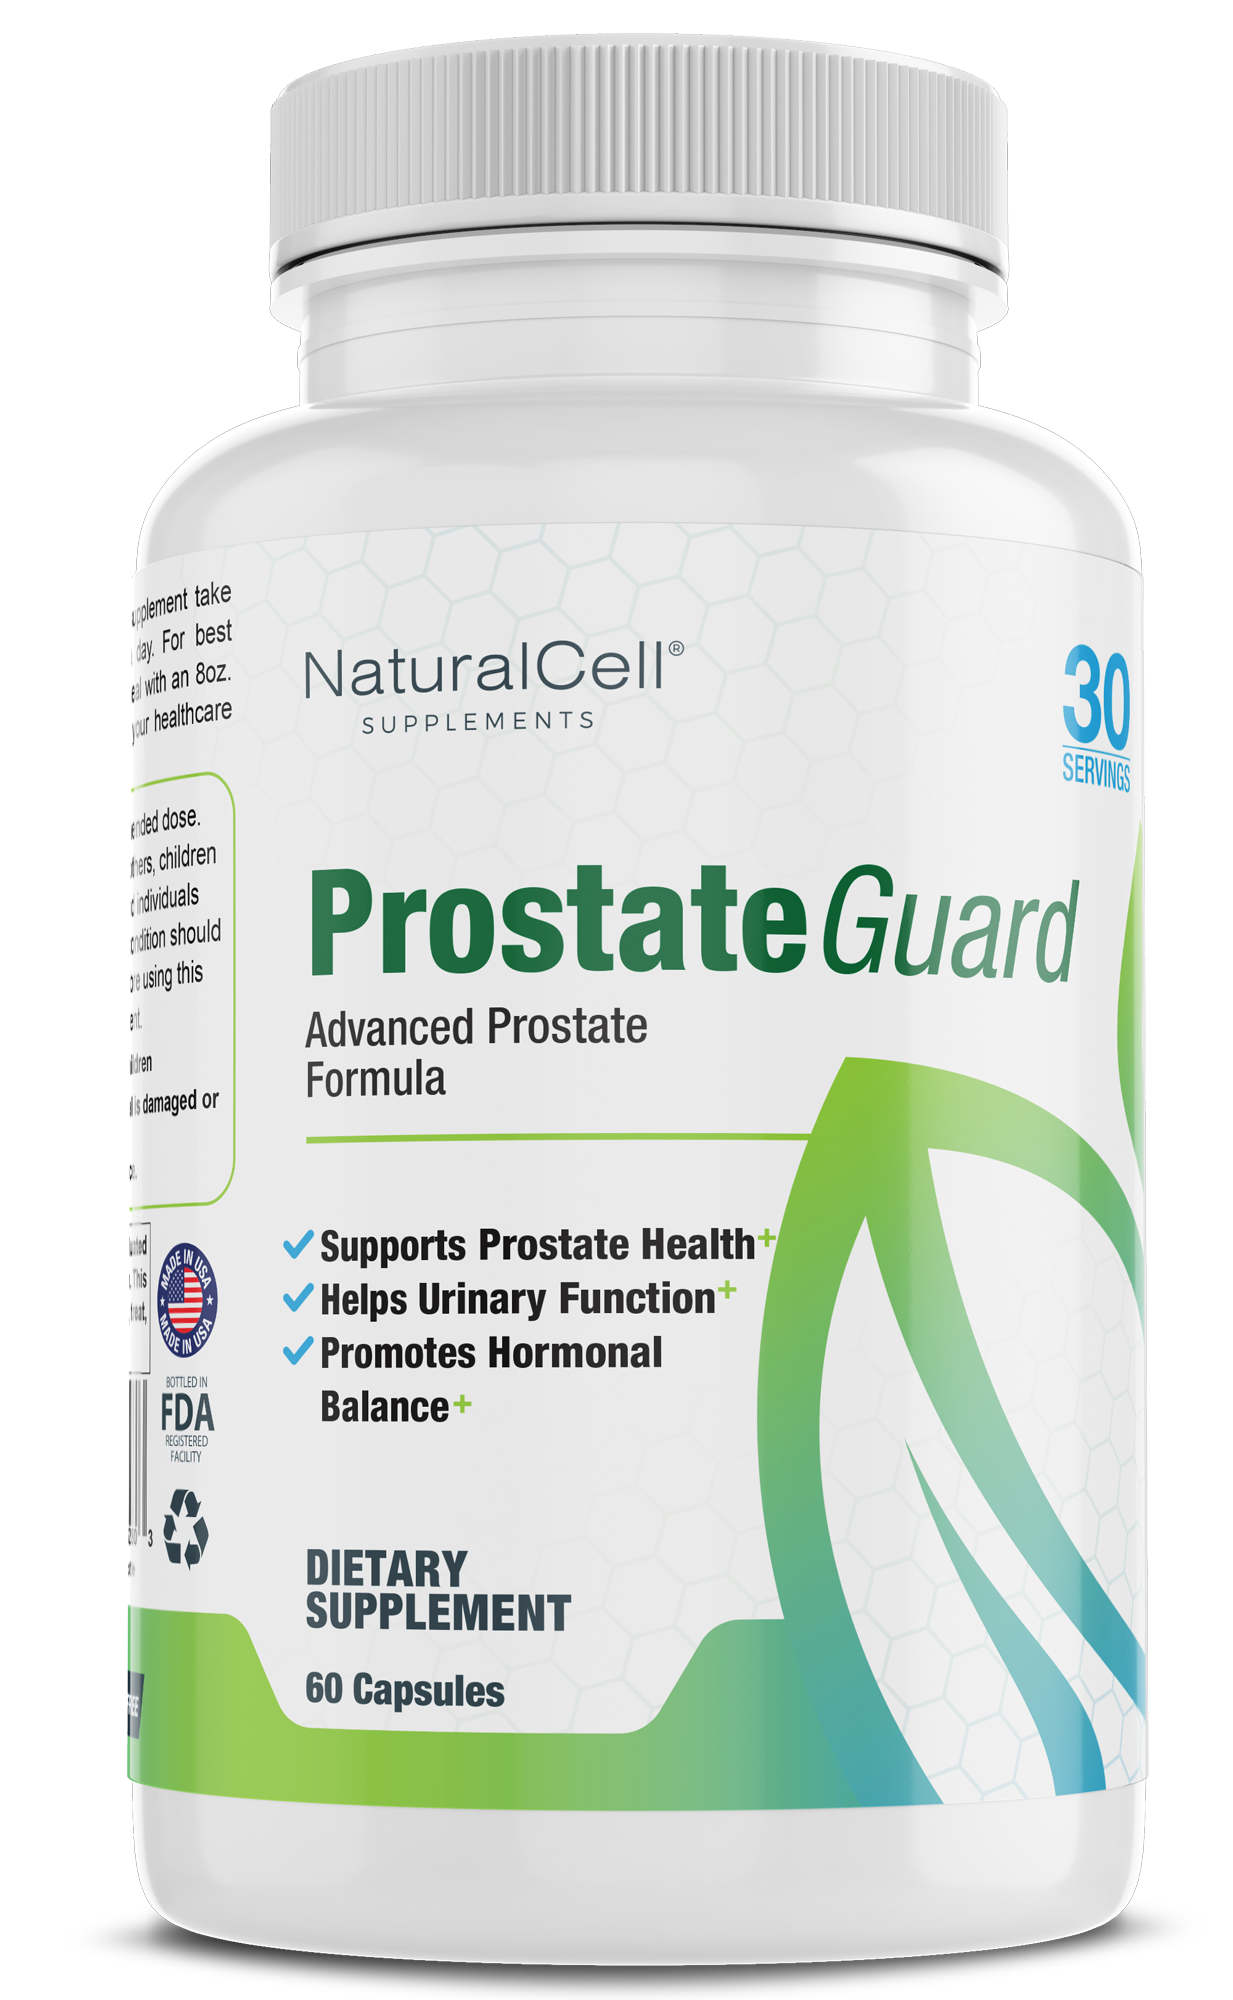 ProstateGuard - Advanced Prostate Formula